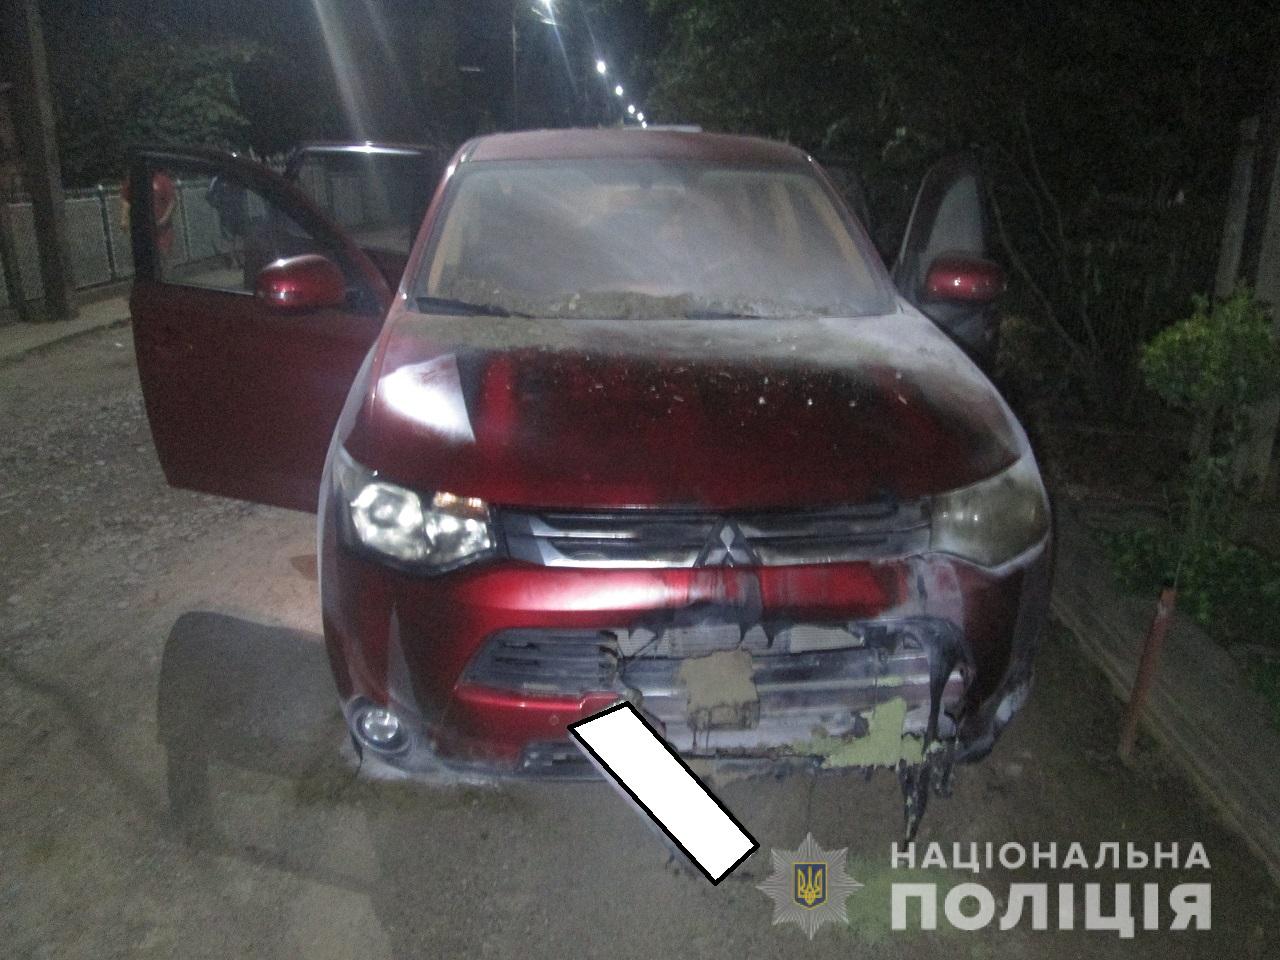 Поліція Ужгорода розпочала слідство за фактом загорання авто